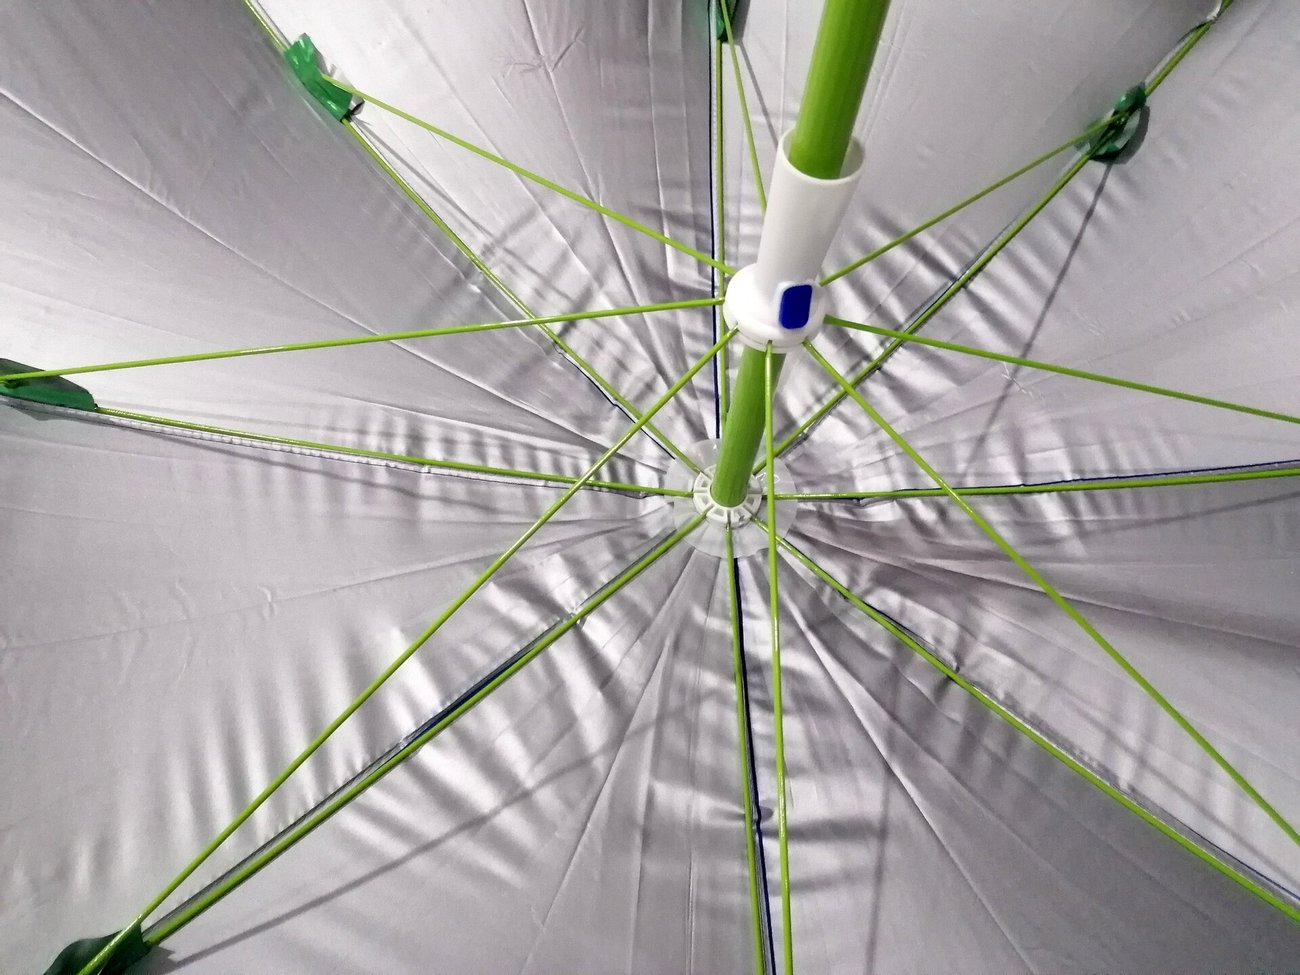 Градински чадър с двойно покритие 3м. М20-215